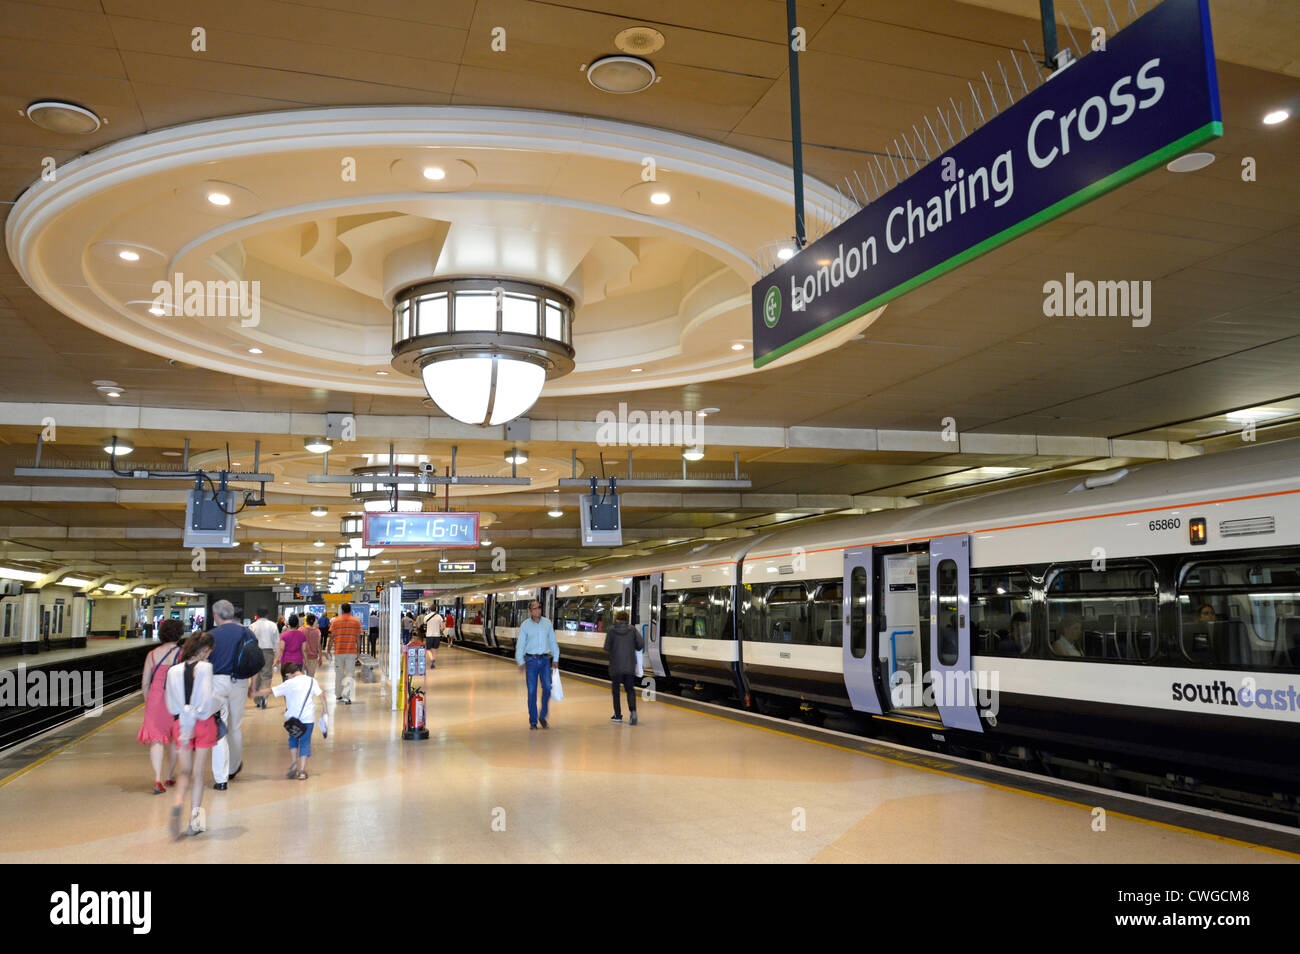 Passeggeri in famiglia e treno alla stazione ferroviaria di London Charing Cross Piattaforma con grande illuminazione ornamentale soffitto e segno Londra Inghilterra Regno Unito Foto Stock